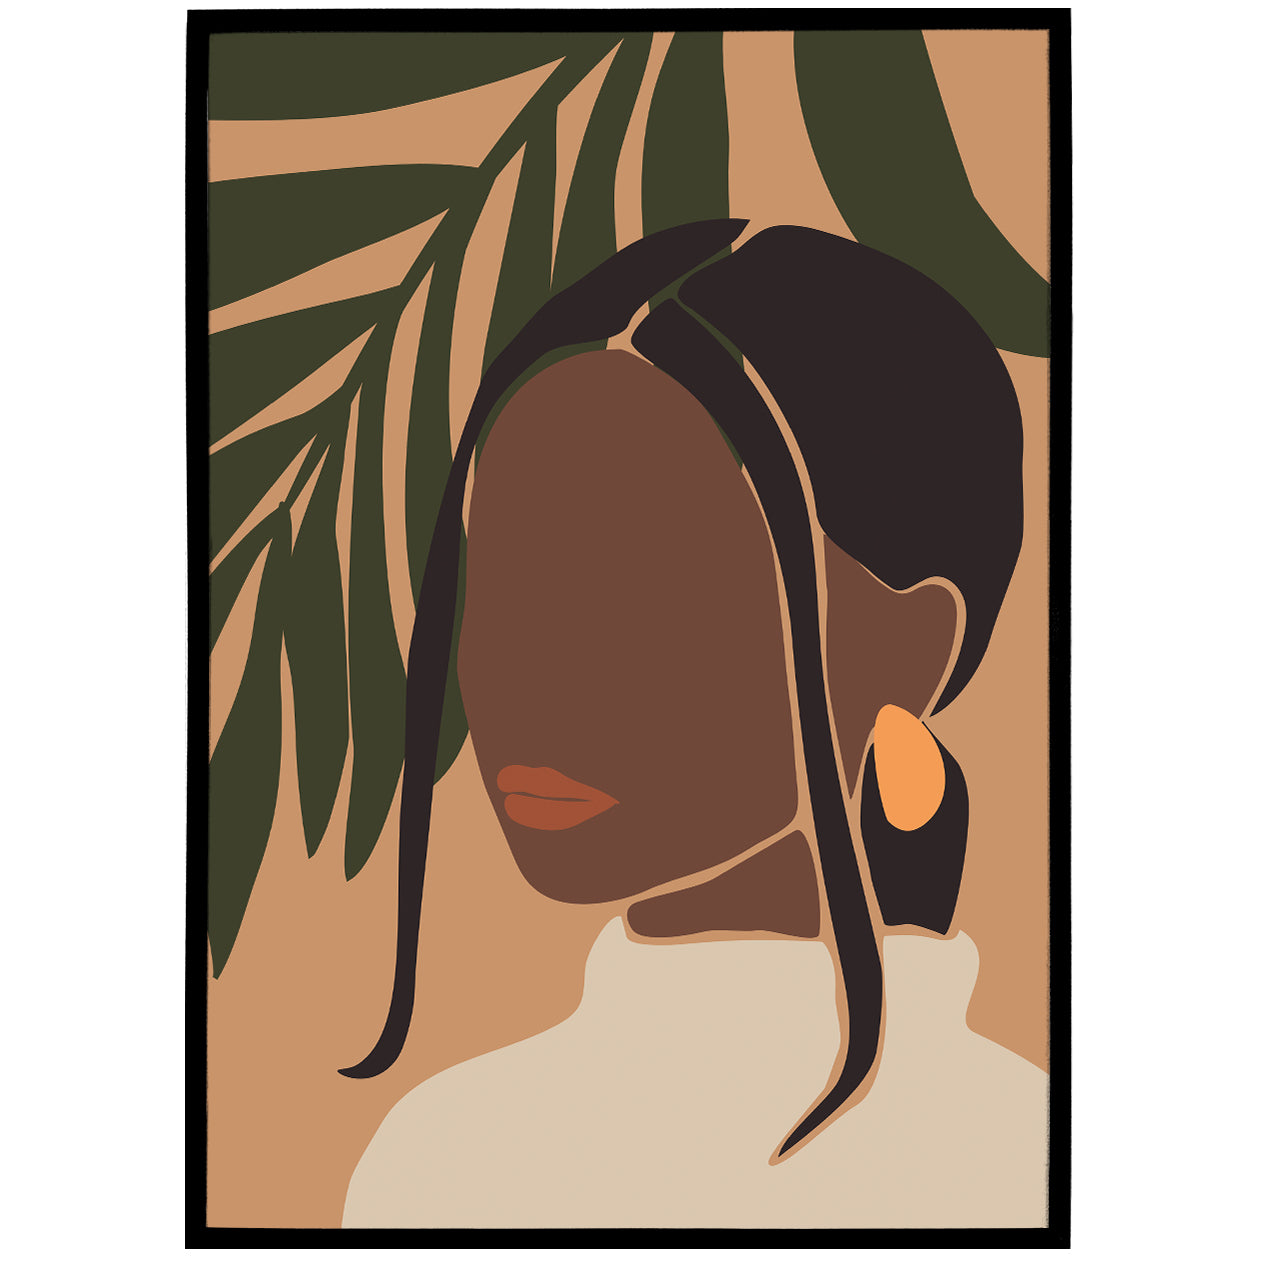 Black woman - plant lady - bohemian art poster